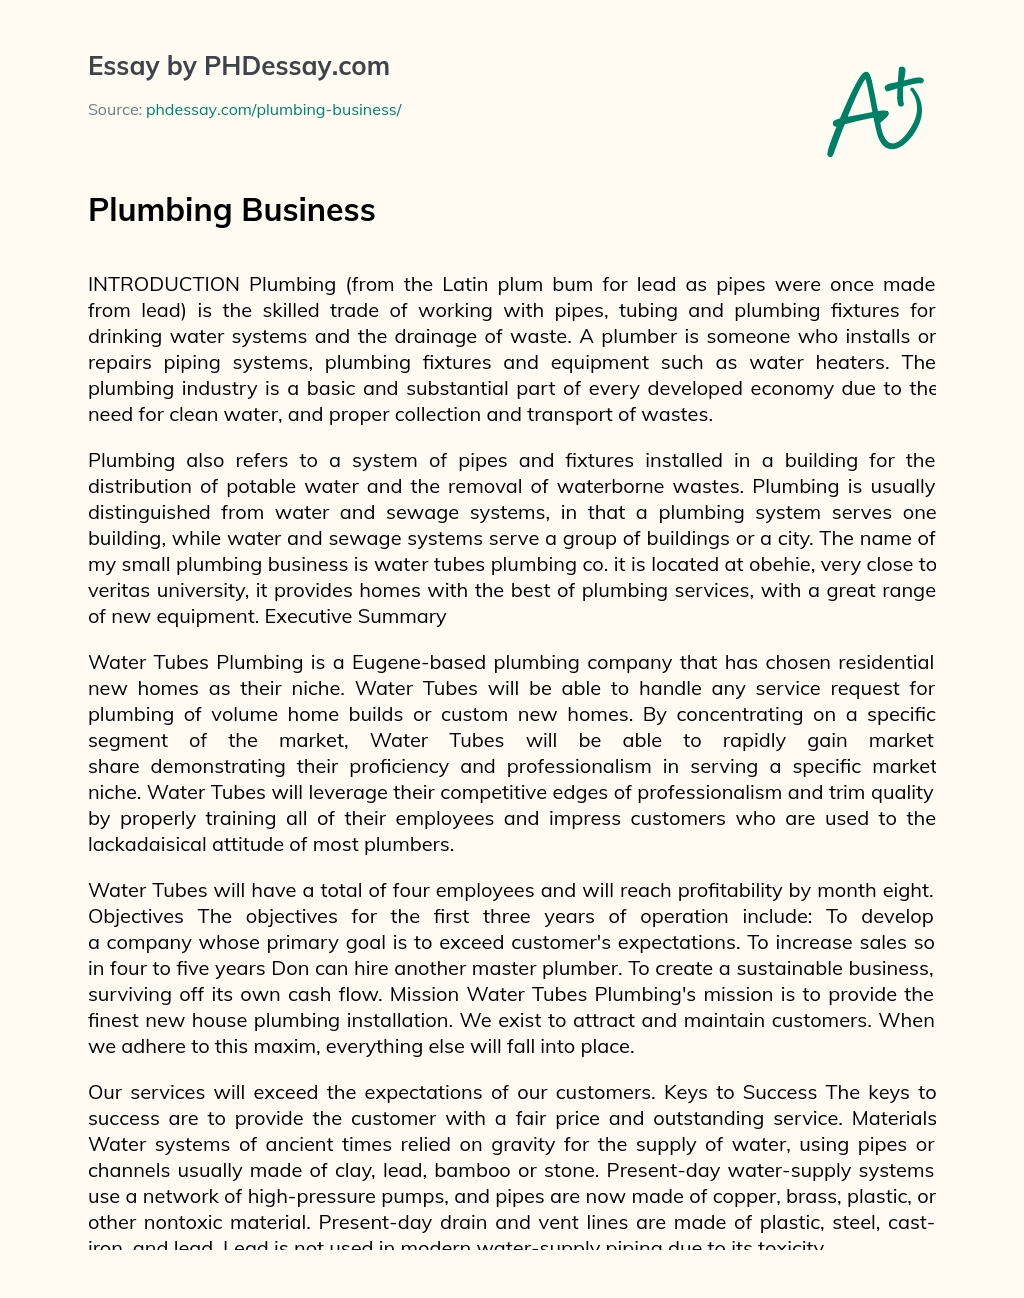 Plumbing Business essay